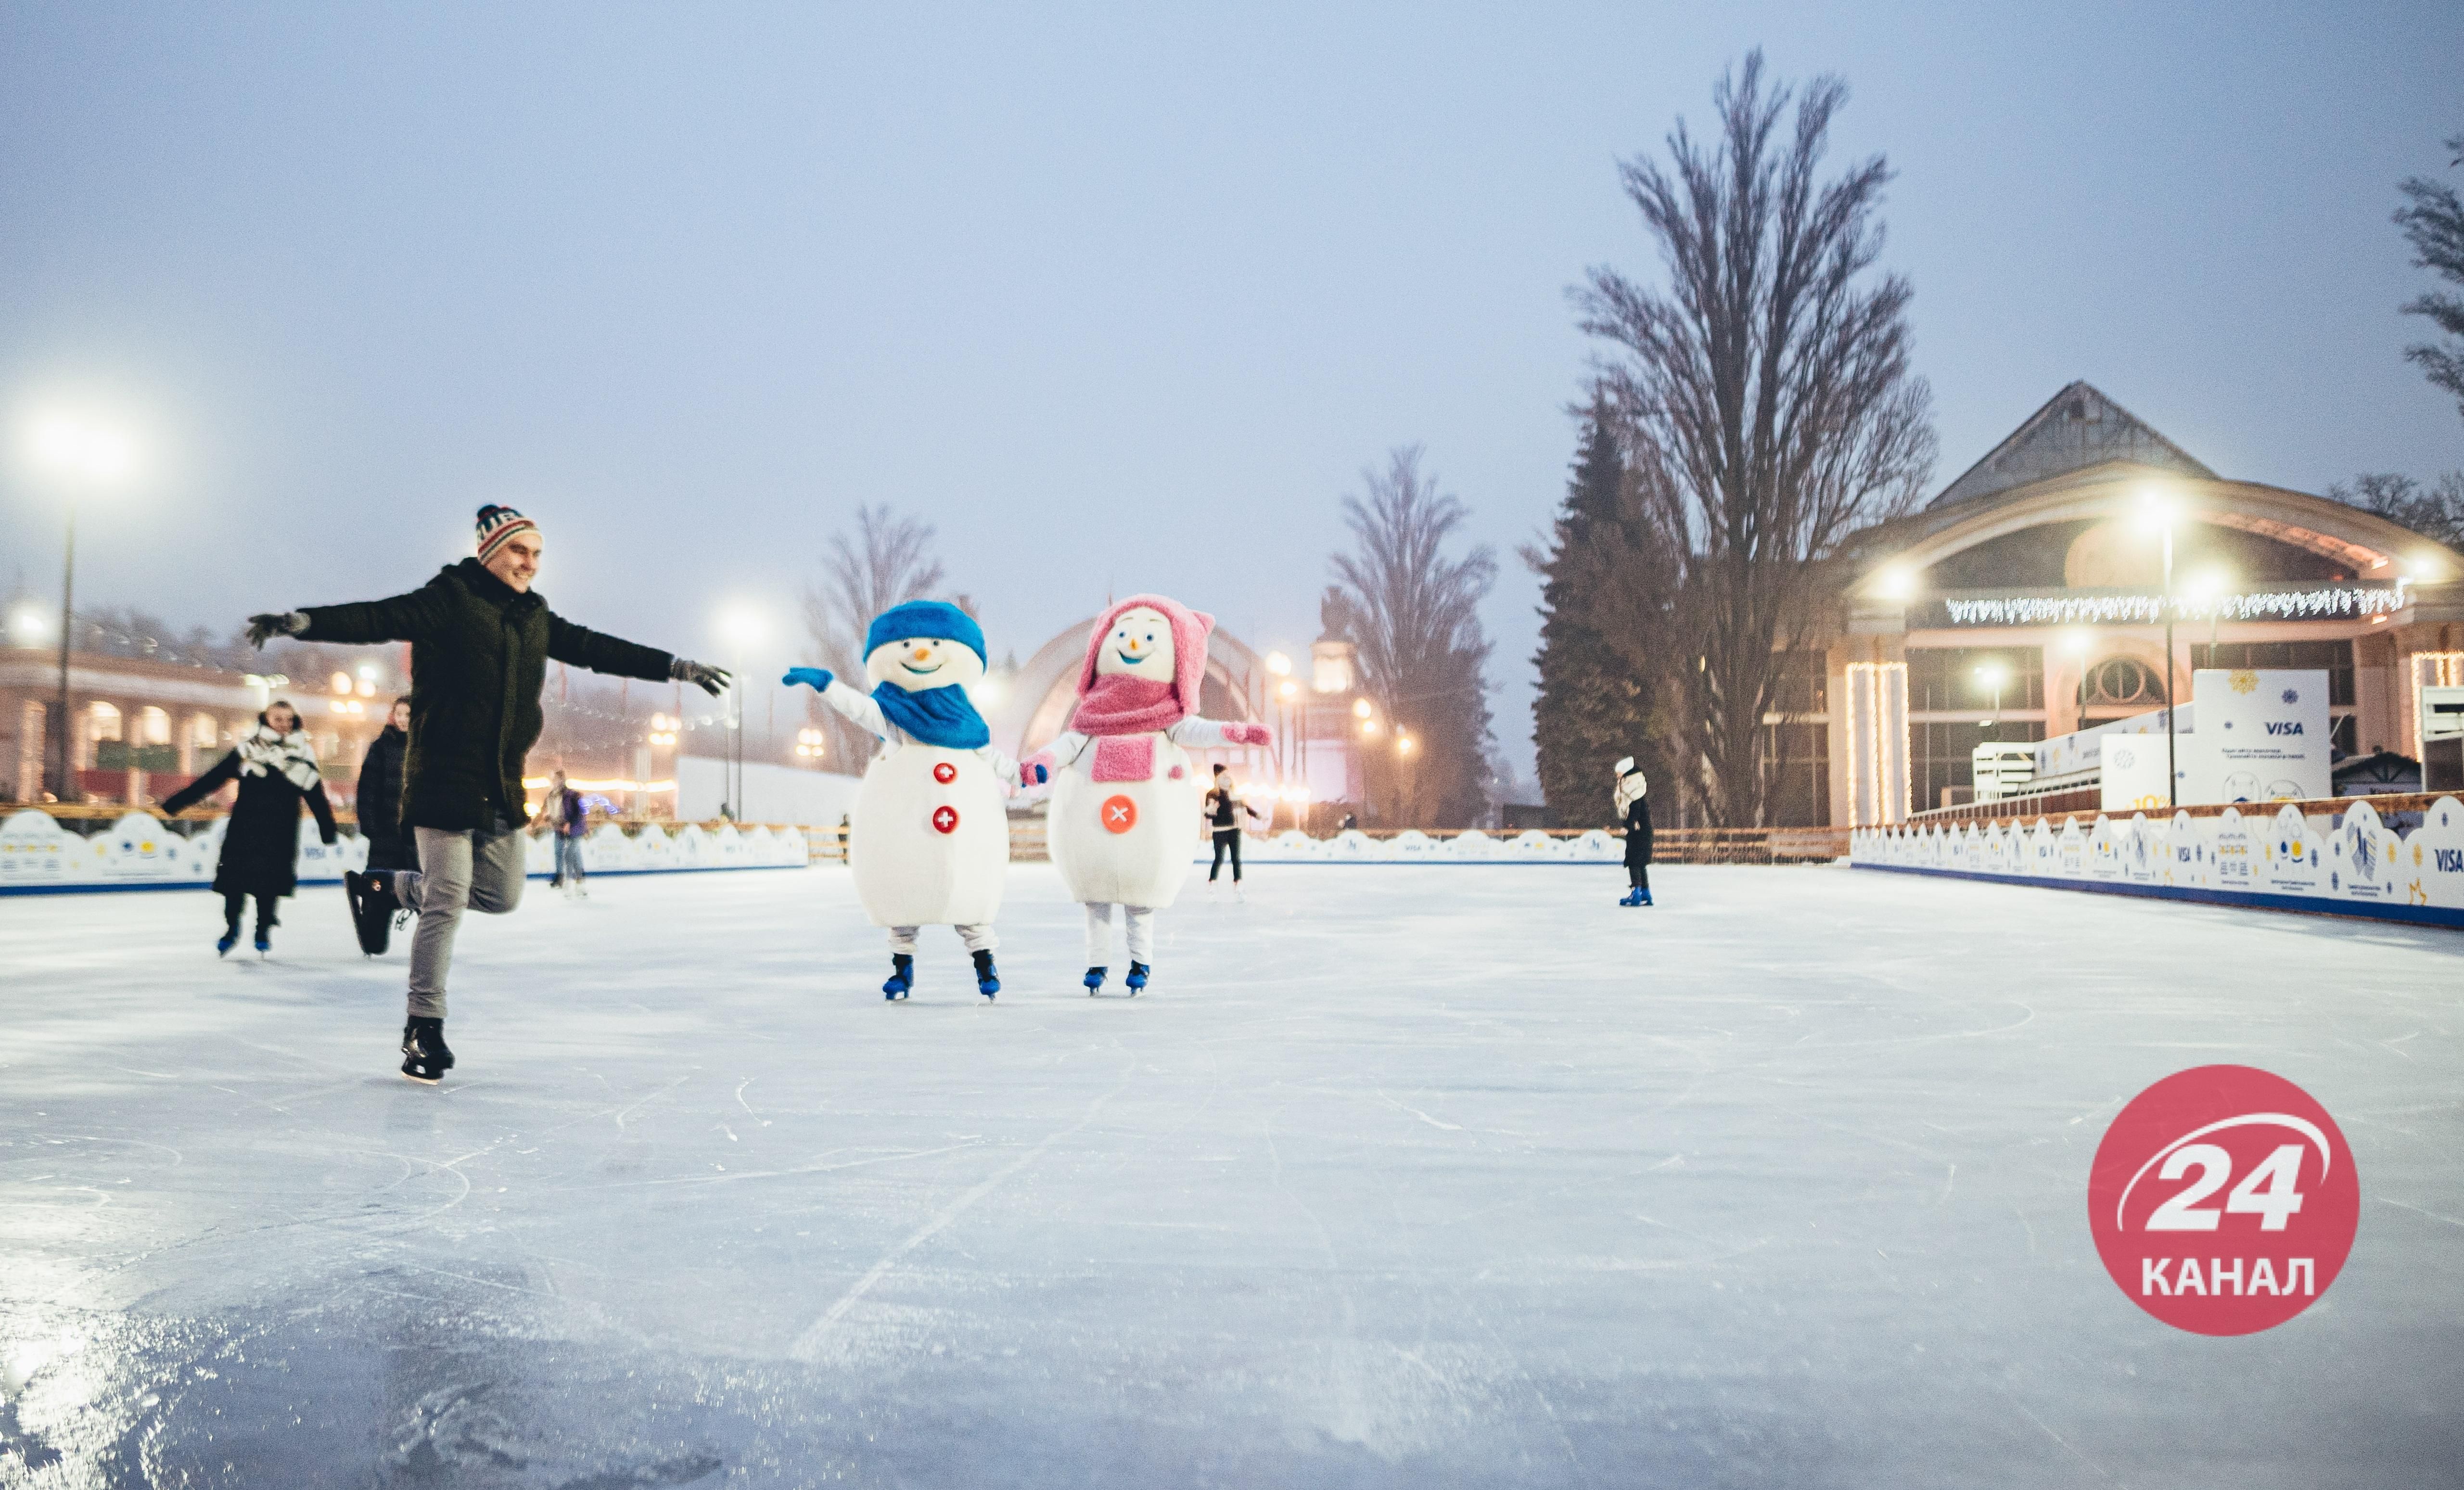 Где встретить эльфа в Киеве и покататься со снеговиком: путеводитель по новогодней локации